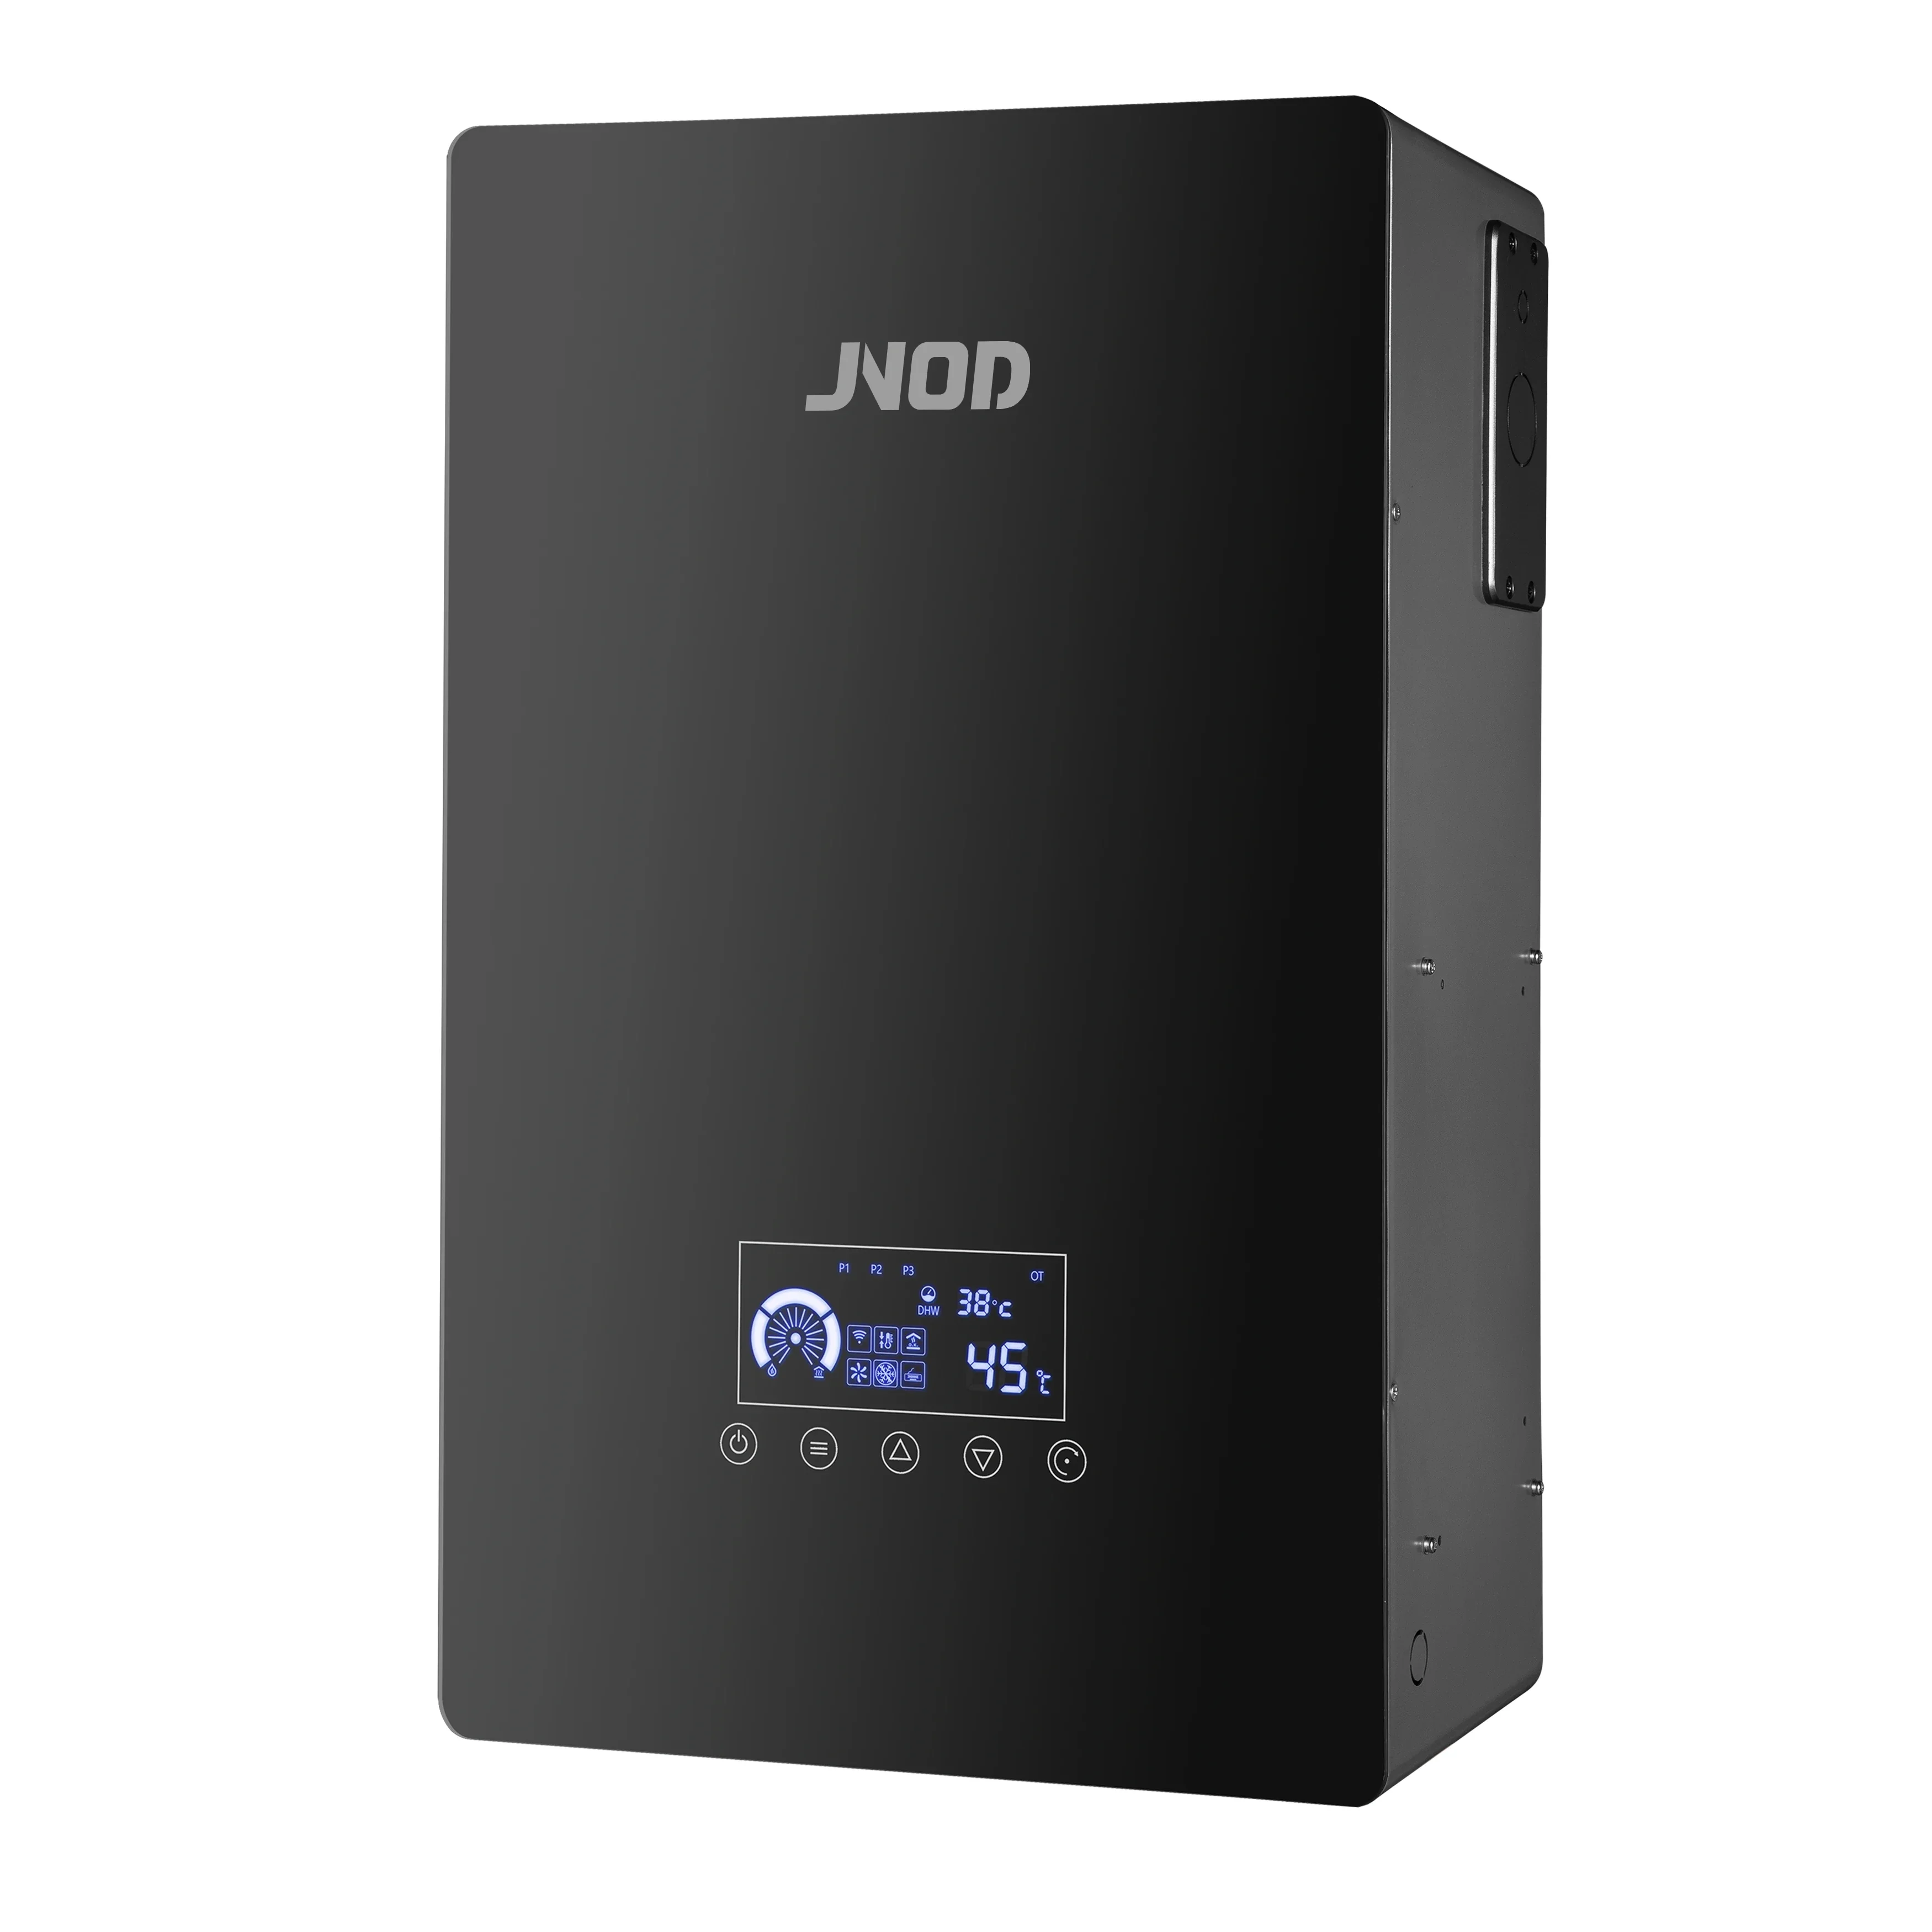 

Домашний обогревательный электрокотел JNOD 230 В с Wi-Fi управлением для центрального отопления и горячей воды, электрические комби-котлы